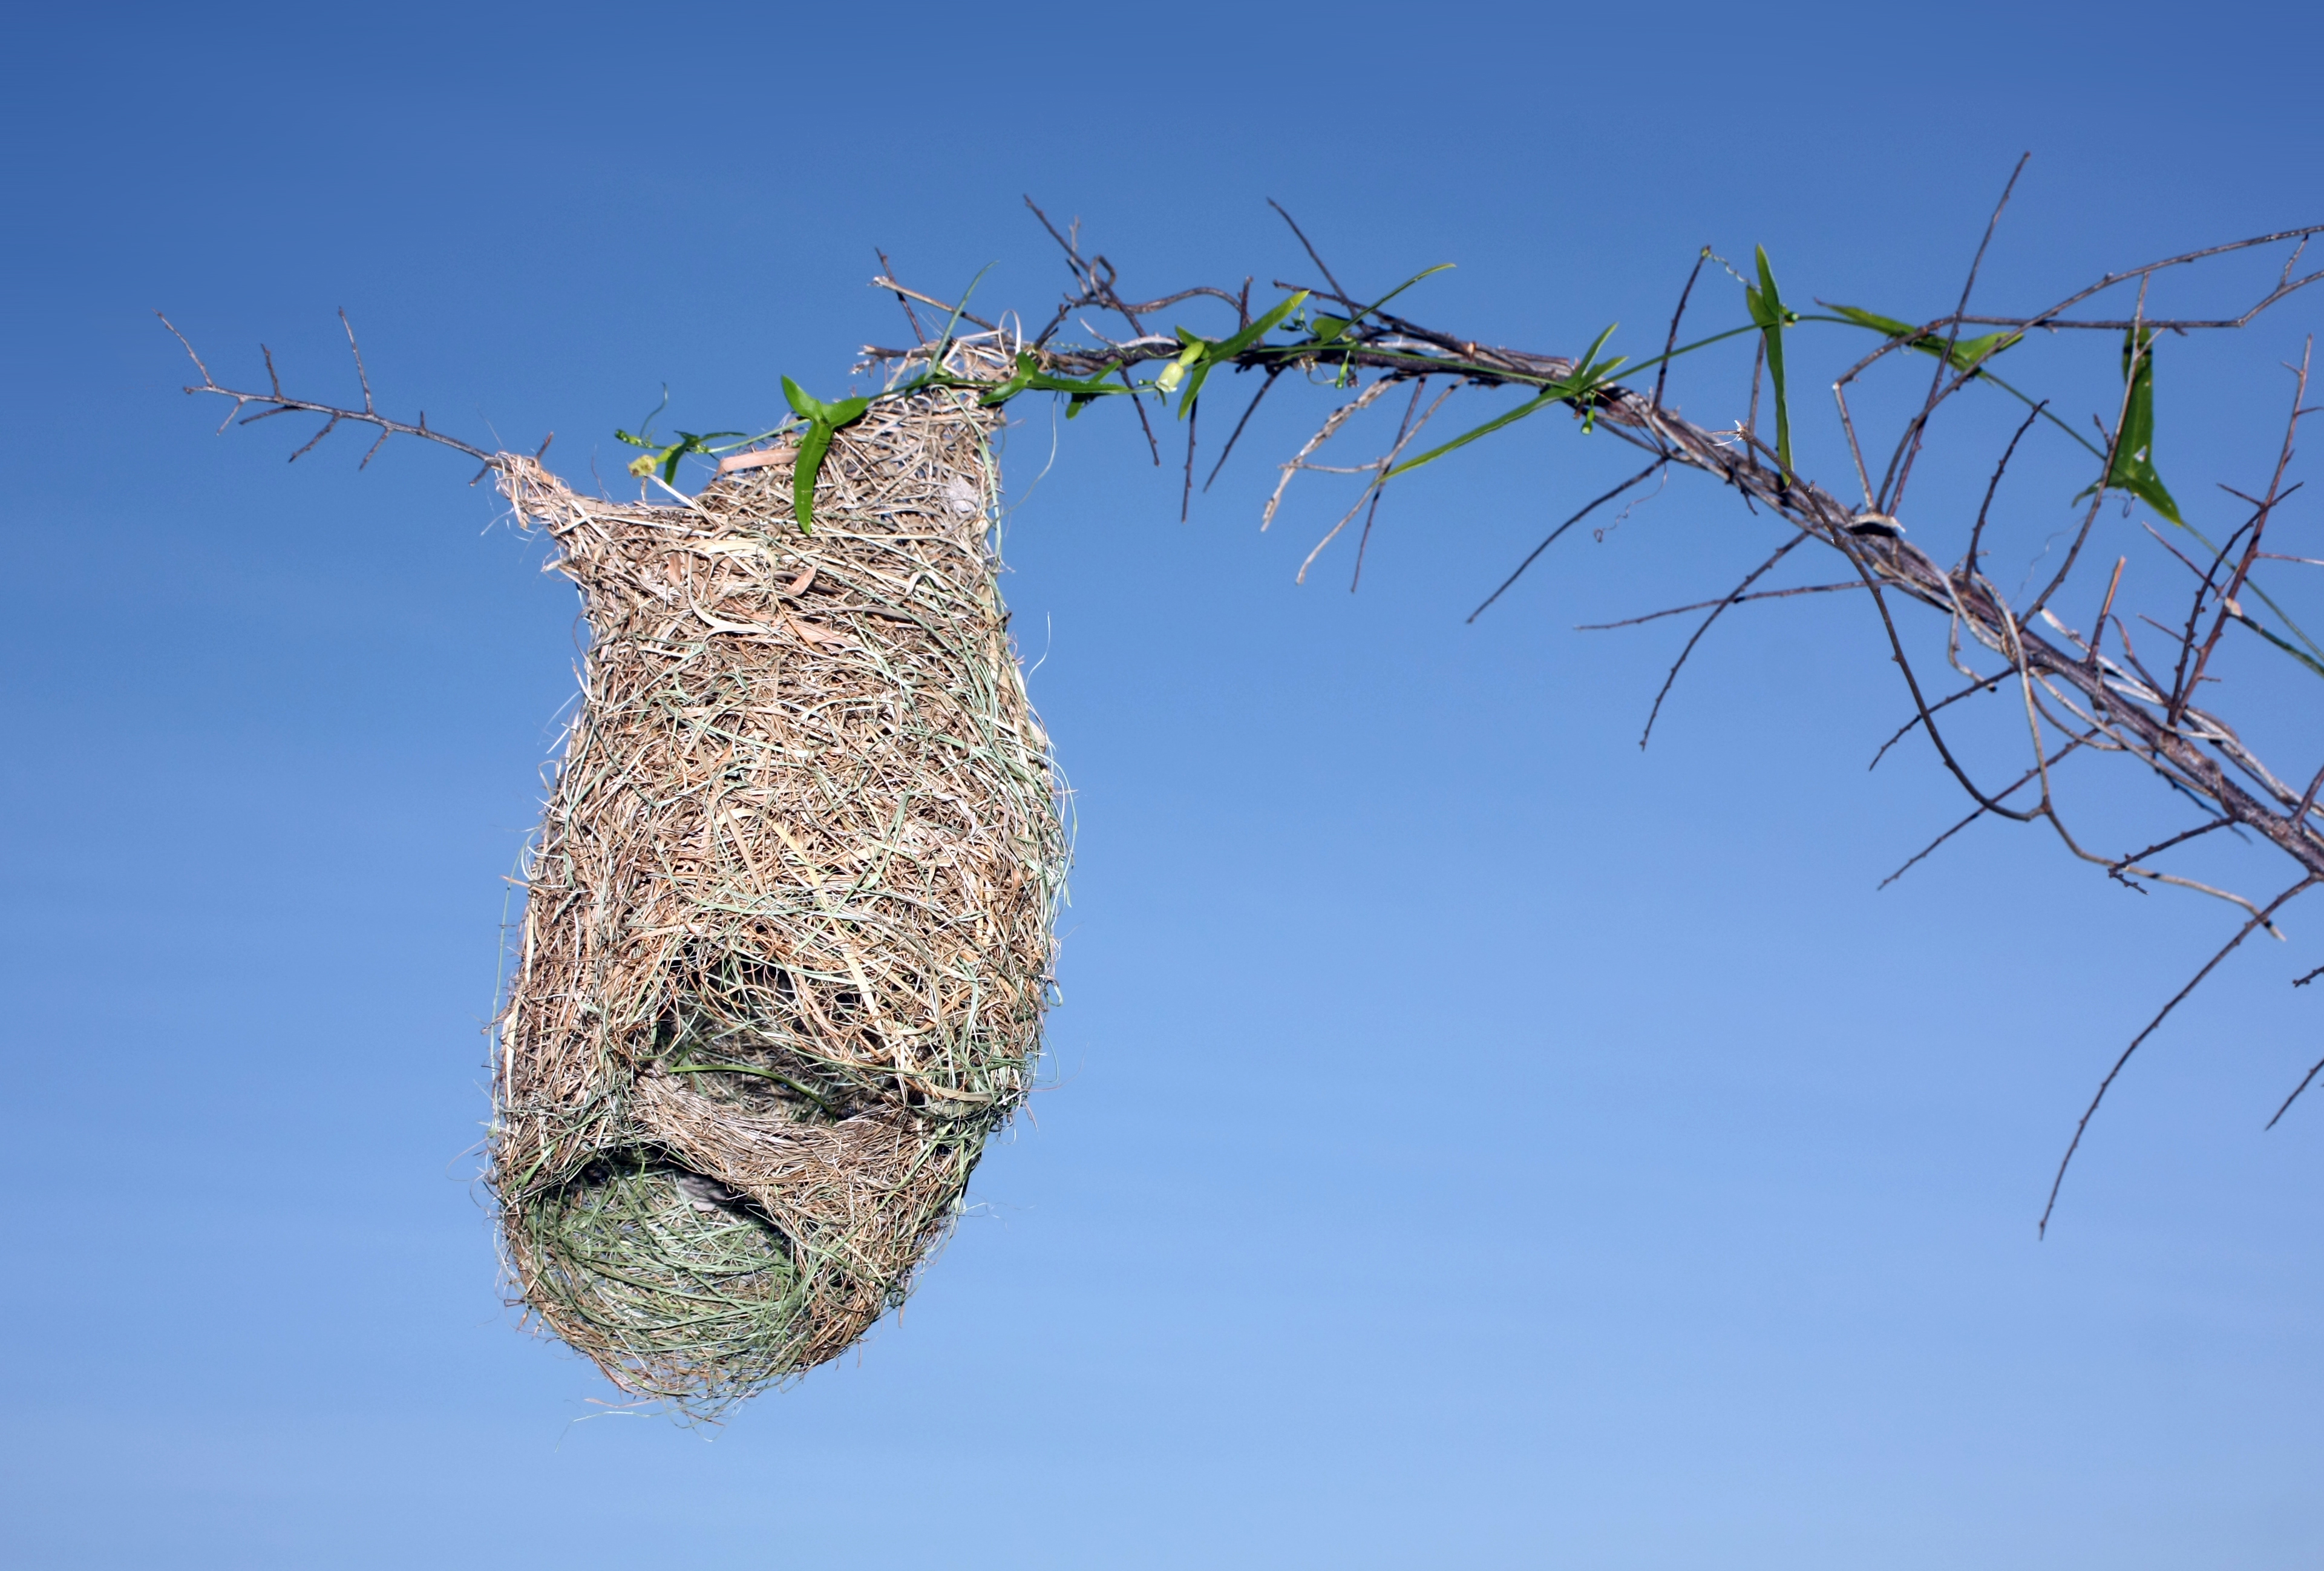 Half-built nest of Baya Weaver